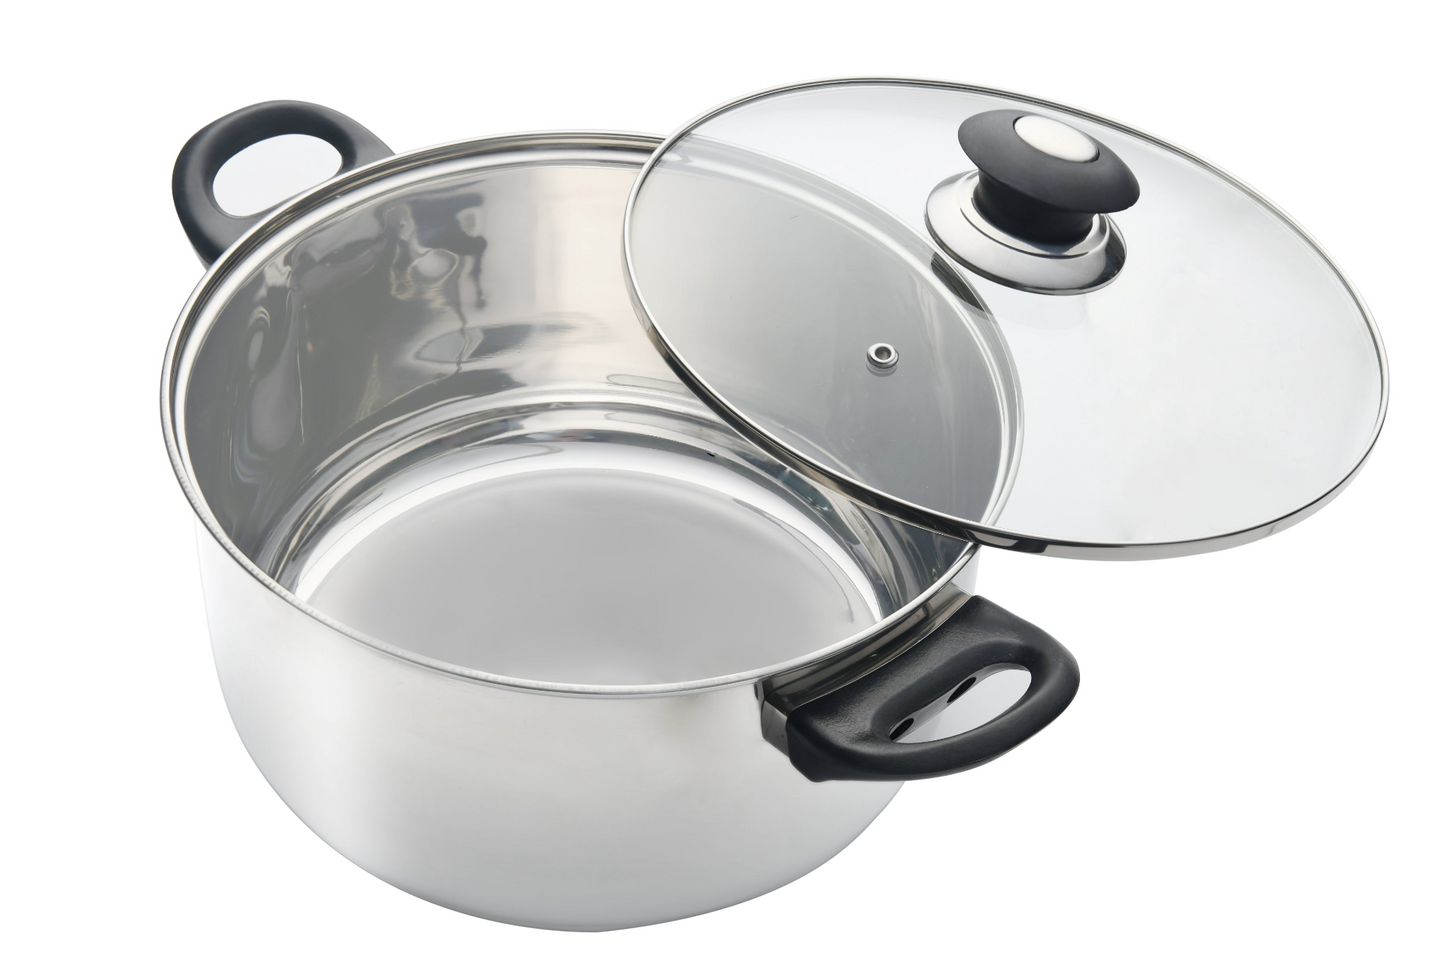 J&V TEXTILES 7-Piece Kitchen Cookware Set, Pots and Pans